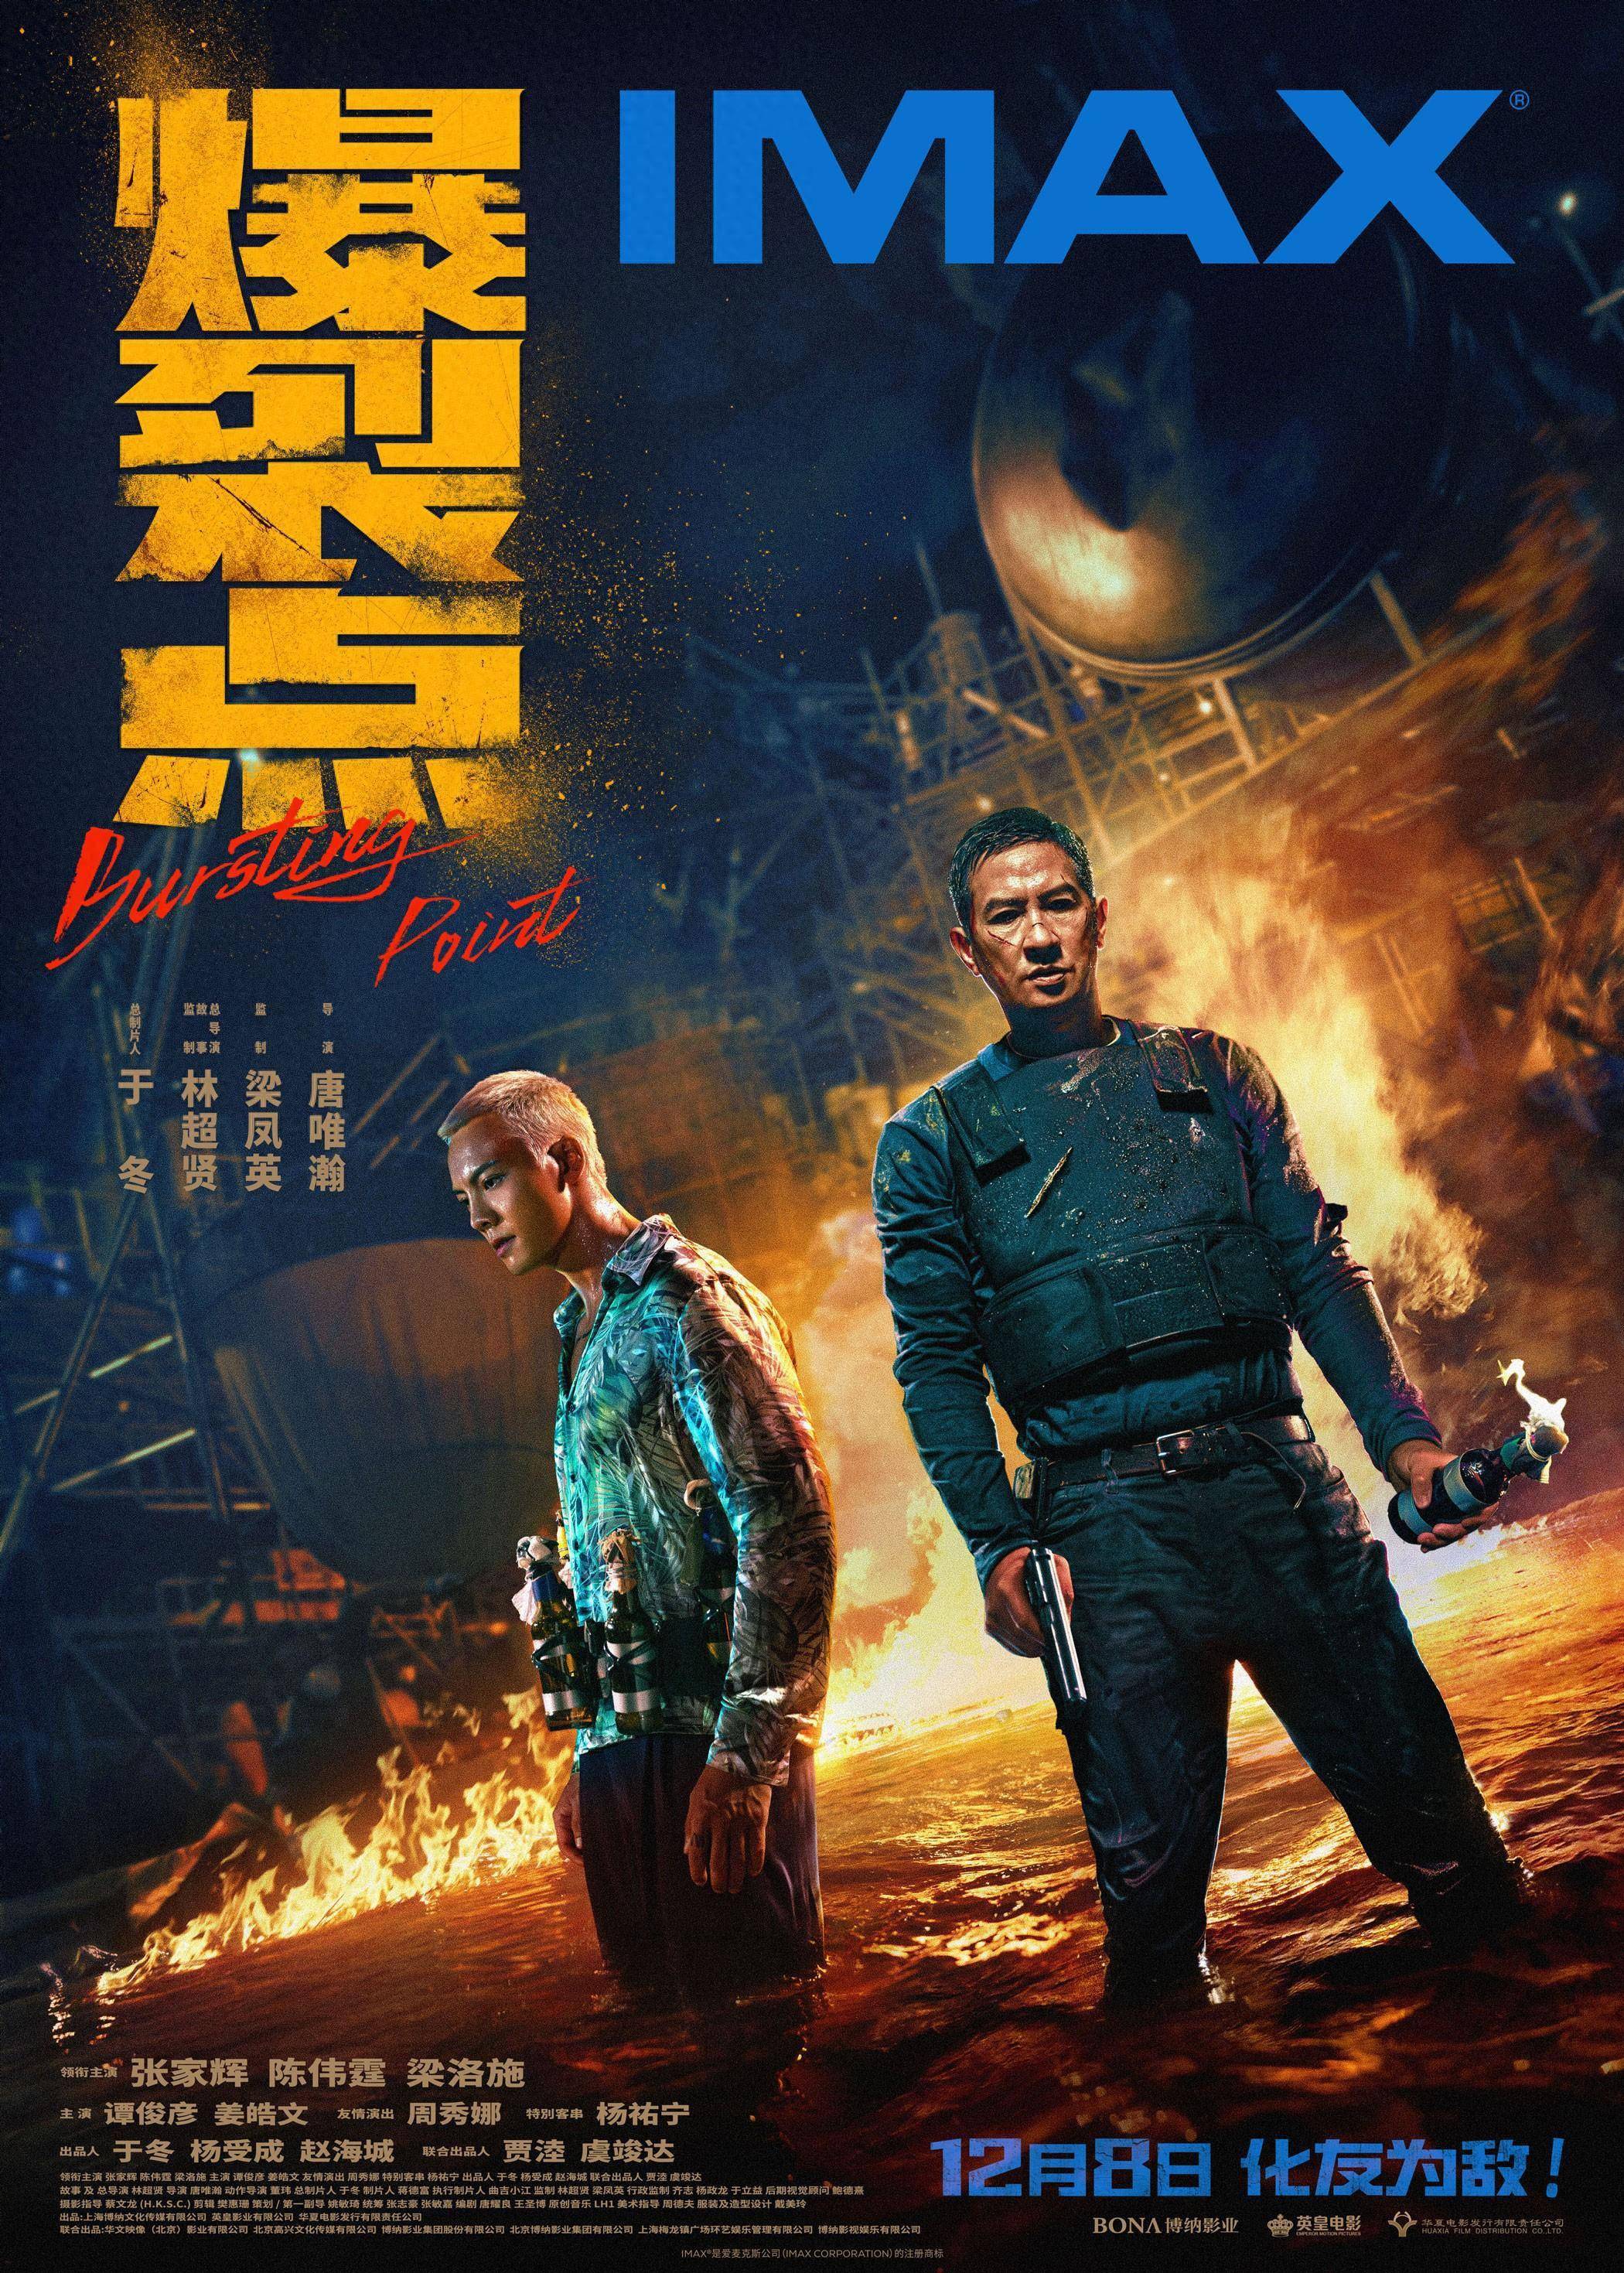 林超贤电影《爆裂点》12月8日登陆IMAX影院